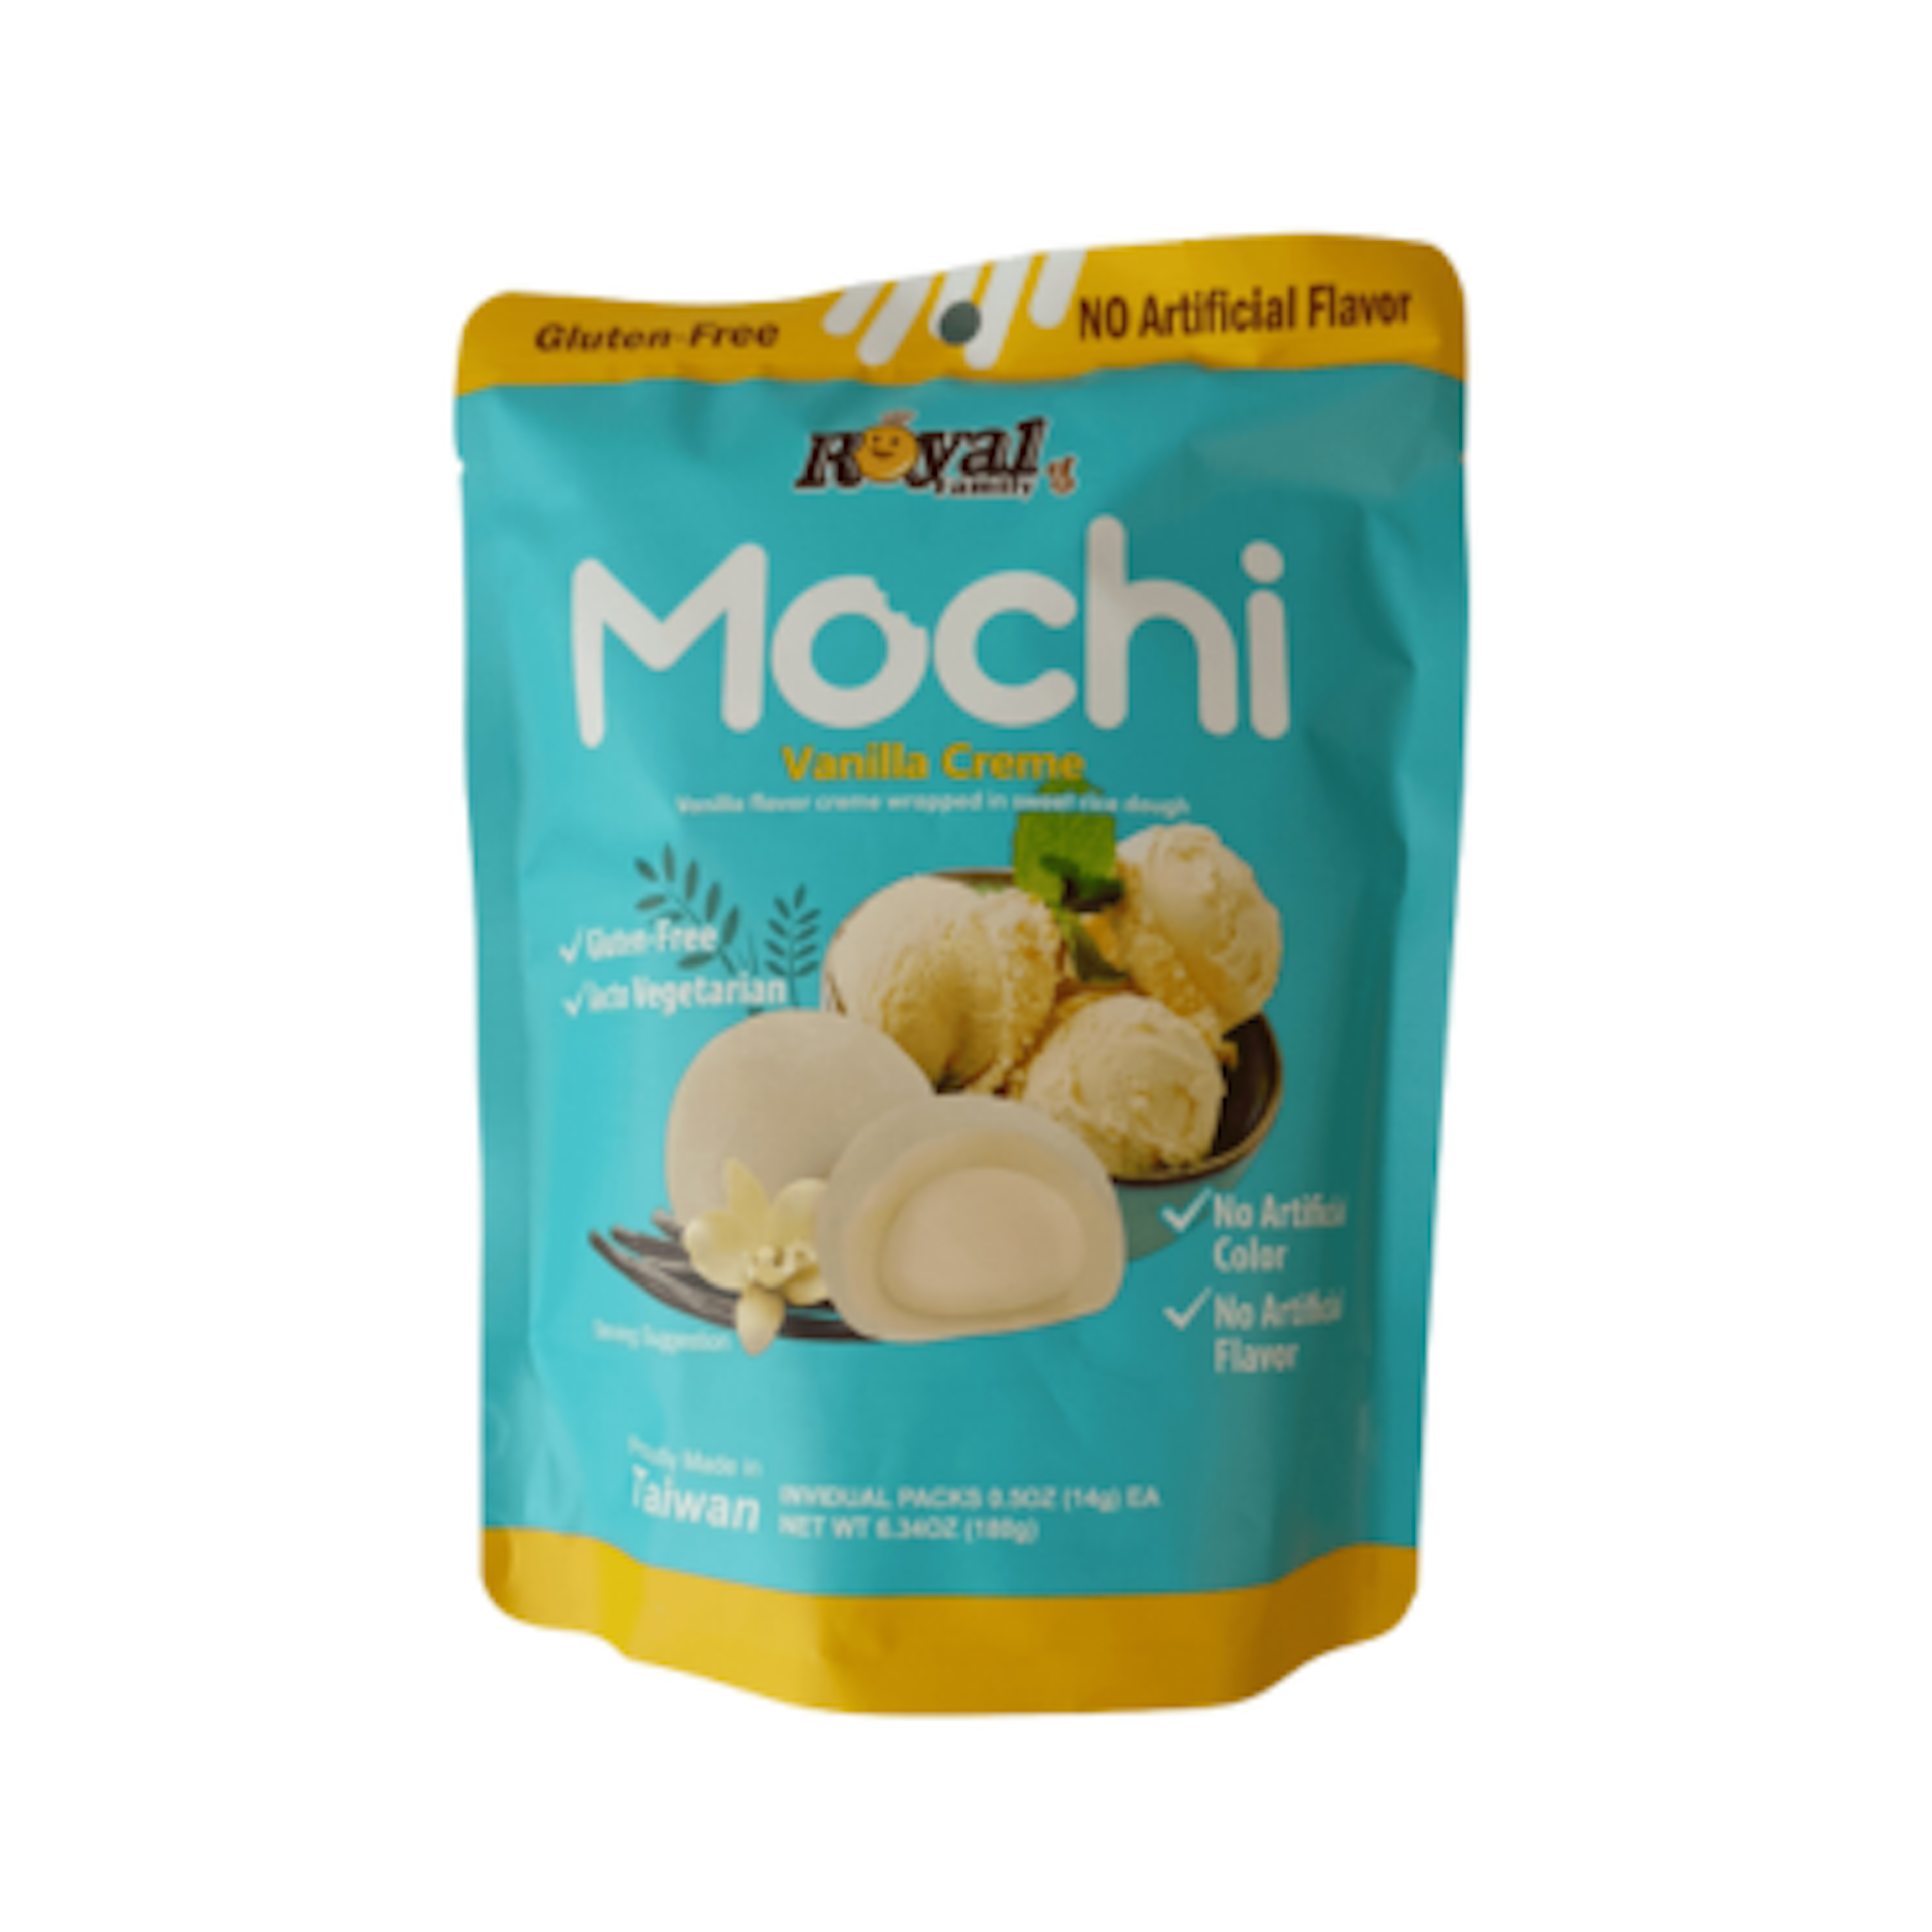 Royal Family Mochi Vanilla Creme - Zarte Mochi ohne künstliche Zusatzstoffe, 180g